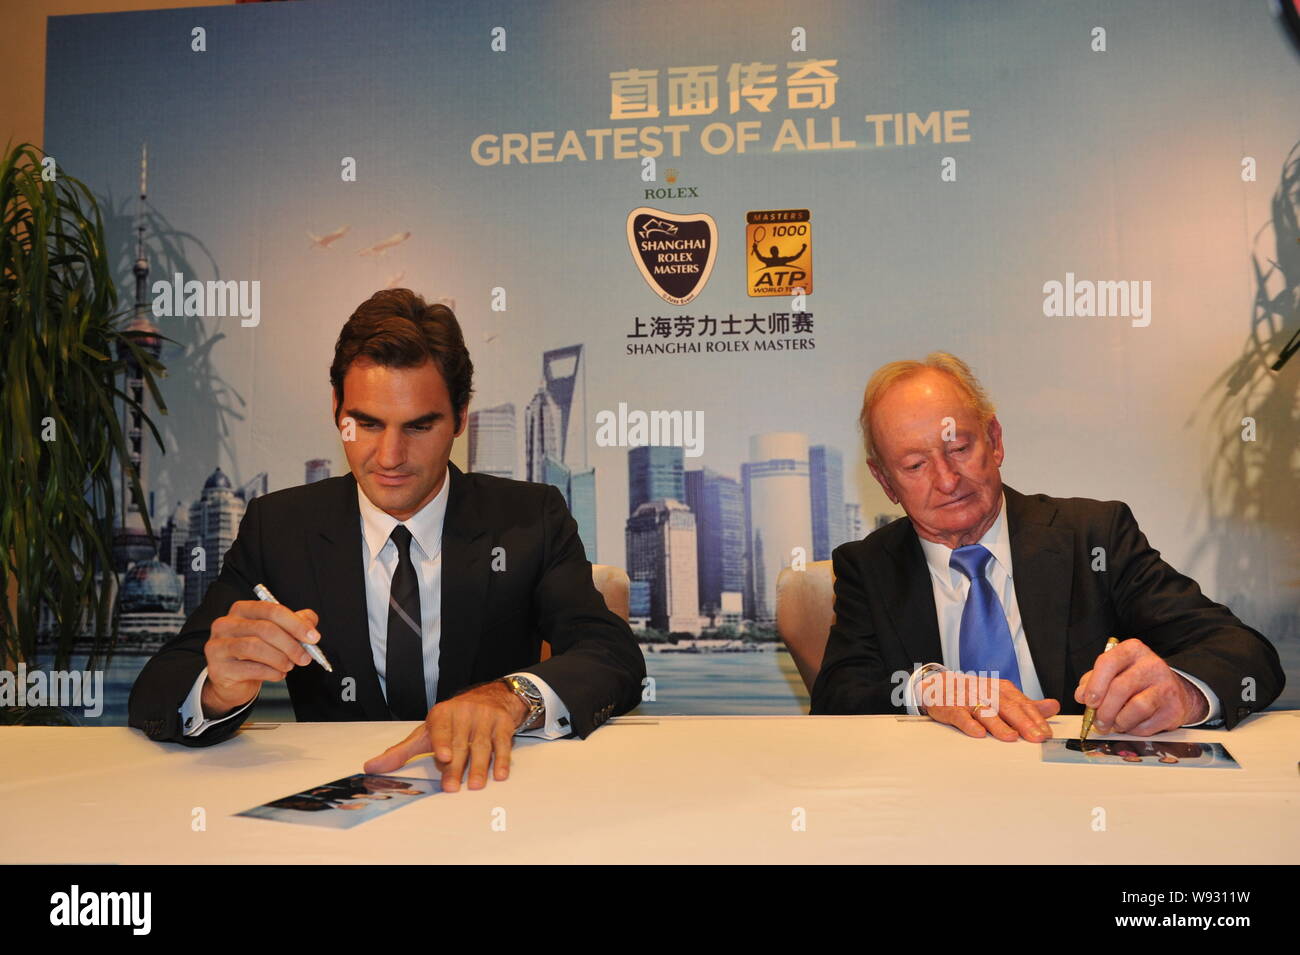 La Suisse de Roger Federer, à gauche, légende du tennis d'Australias Rod Laver les panneaux pour les fans lors d'une cérémonie d'accueil des Masters de Shanghai en 2013 Banque D'Images